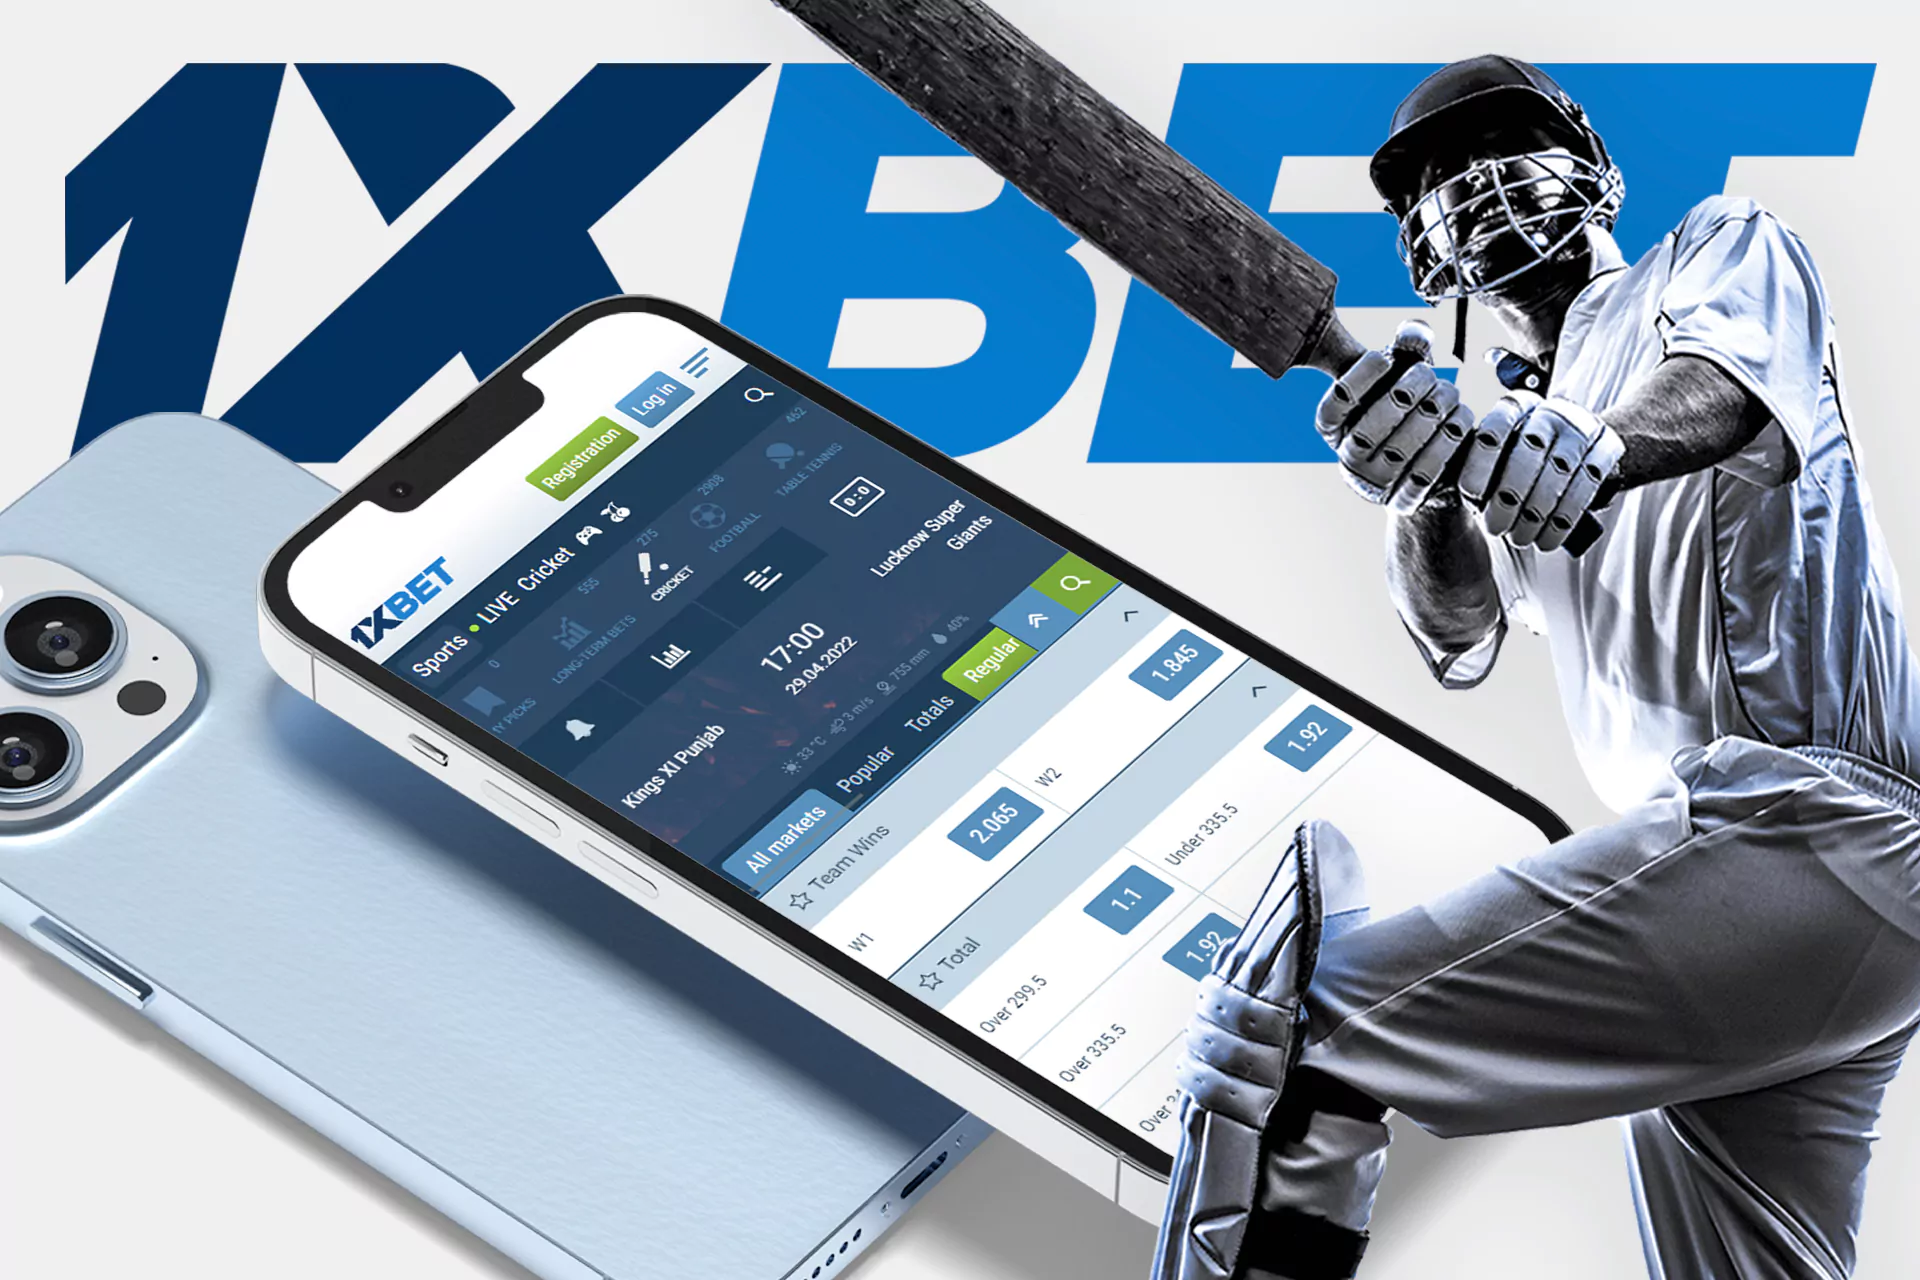 1xBet ऐप के उपयोगकर्ता ऑनलाइन क्रिकेट पर दांव लगा सकते हैं।